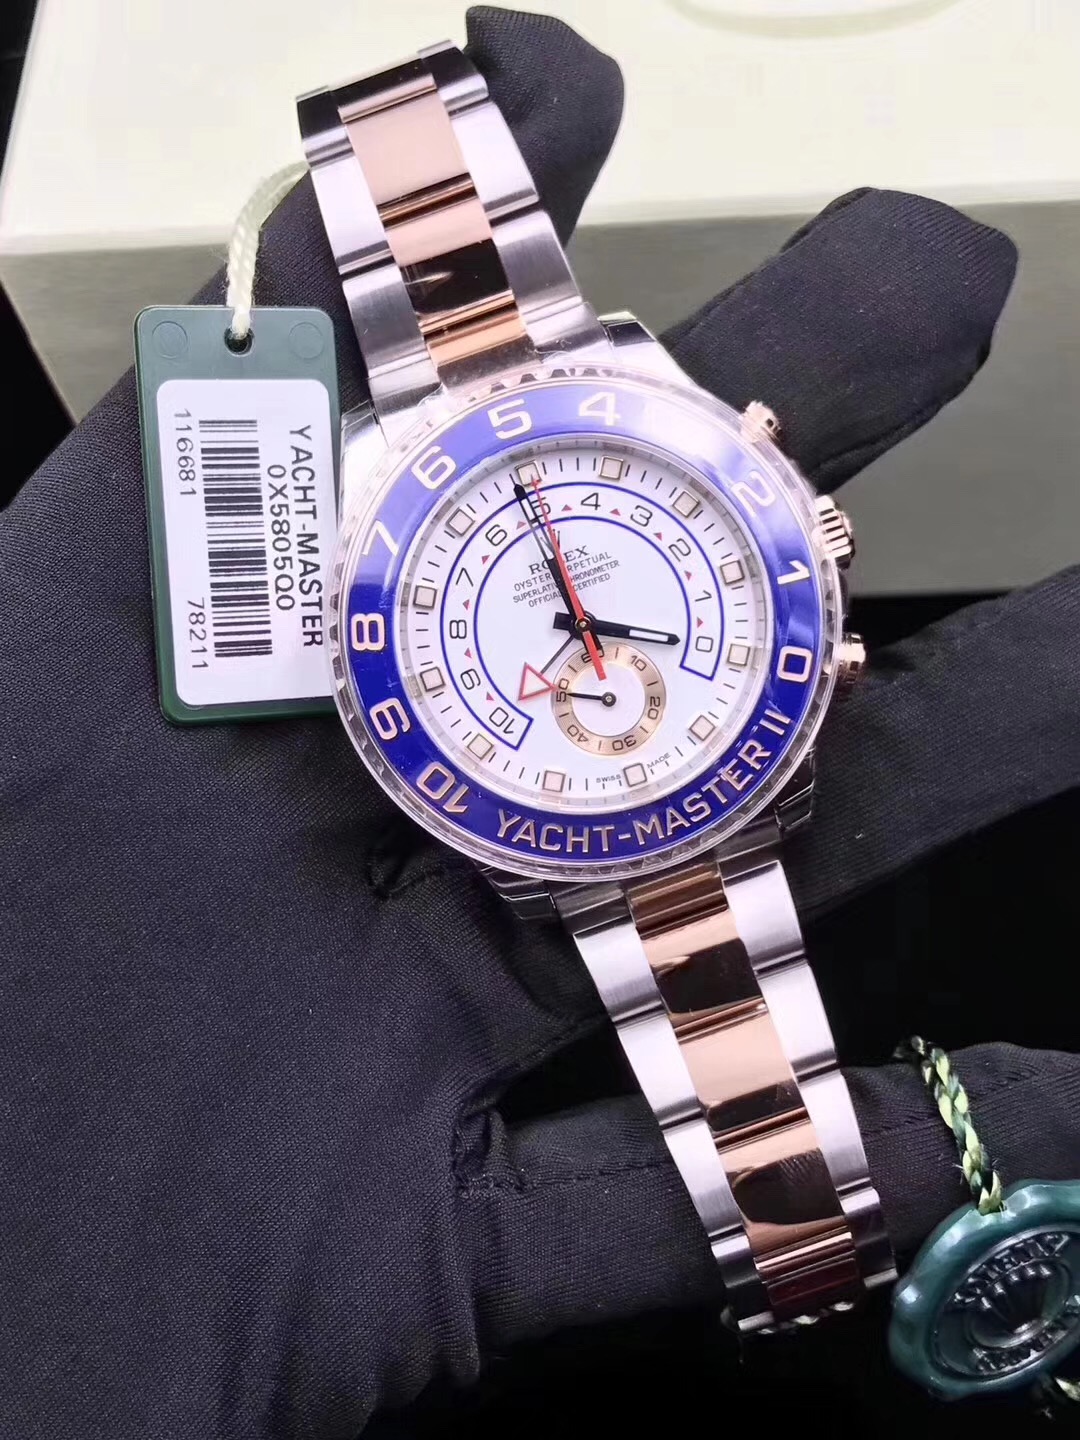 2023012011144549 - 传统手表的历史